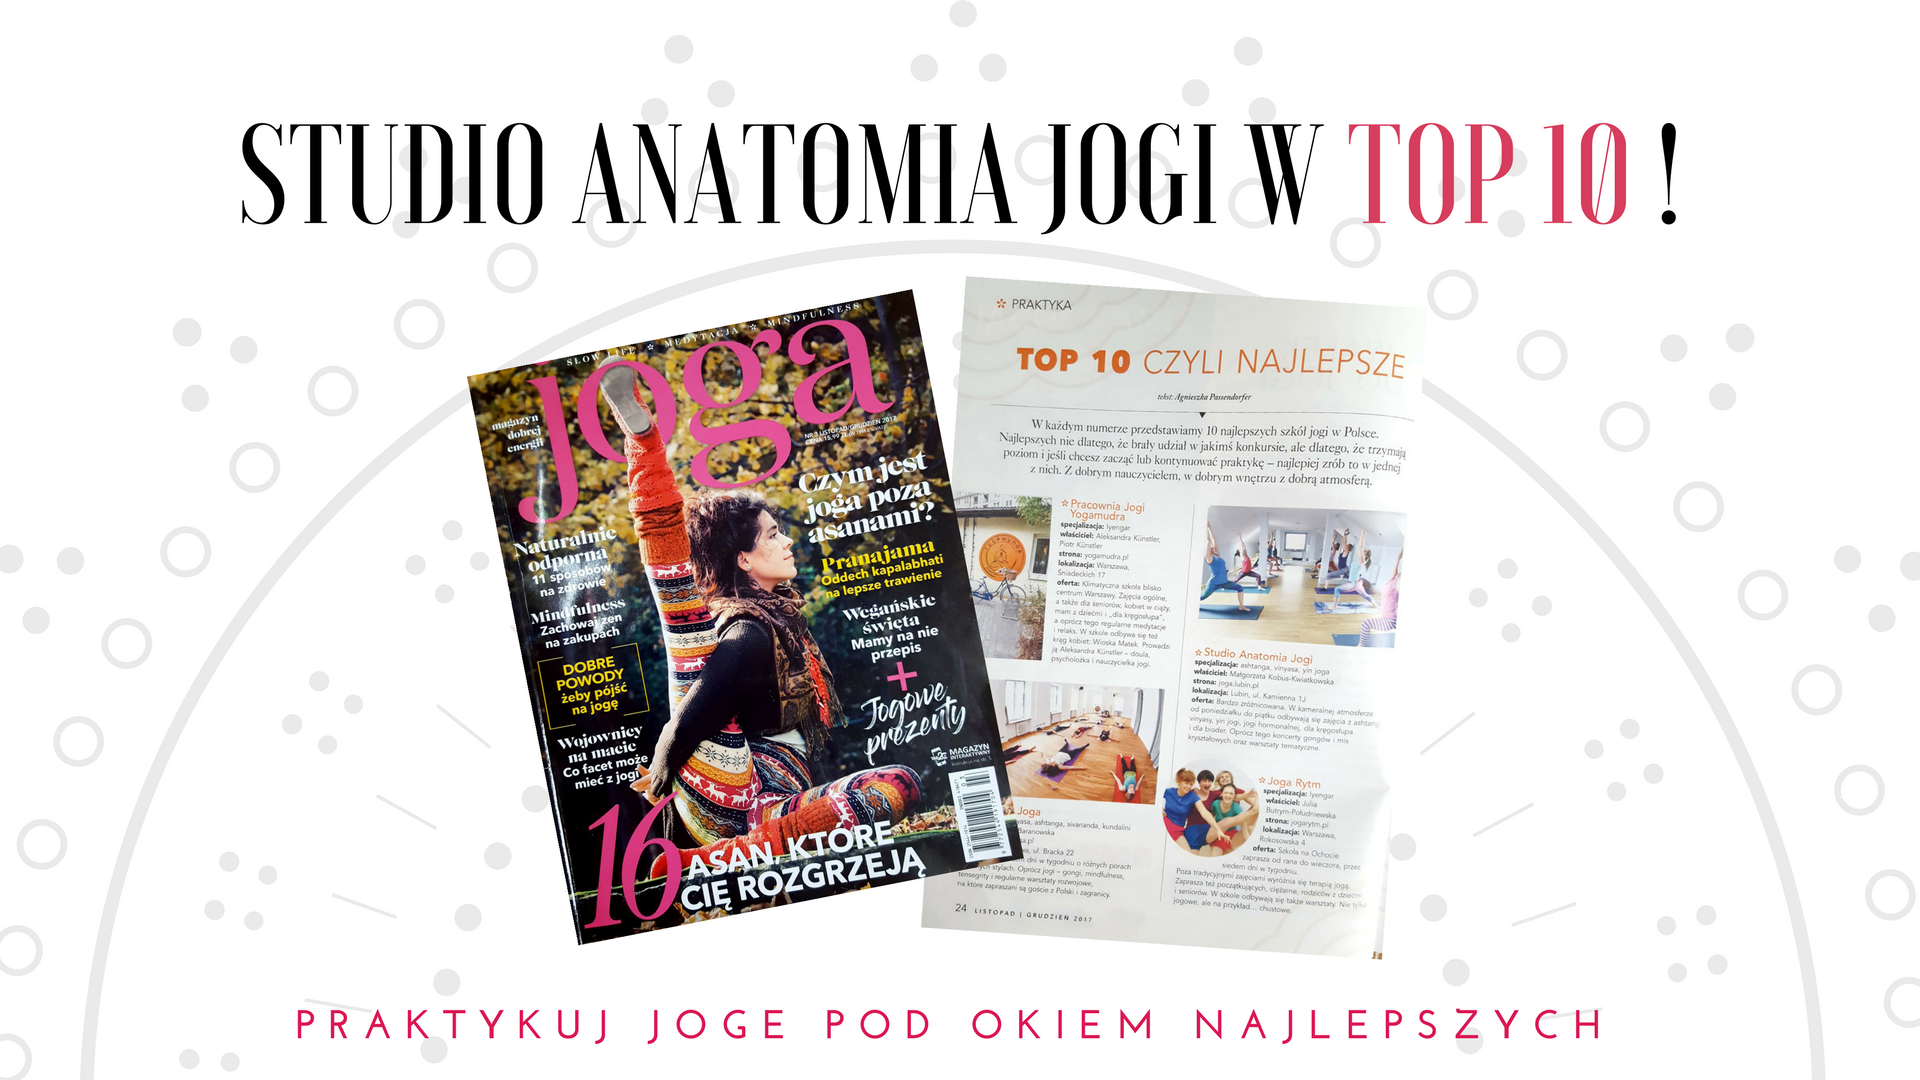 Studio Anatomia Jogi w TOP 10 według magazynu JOGA!